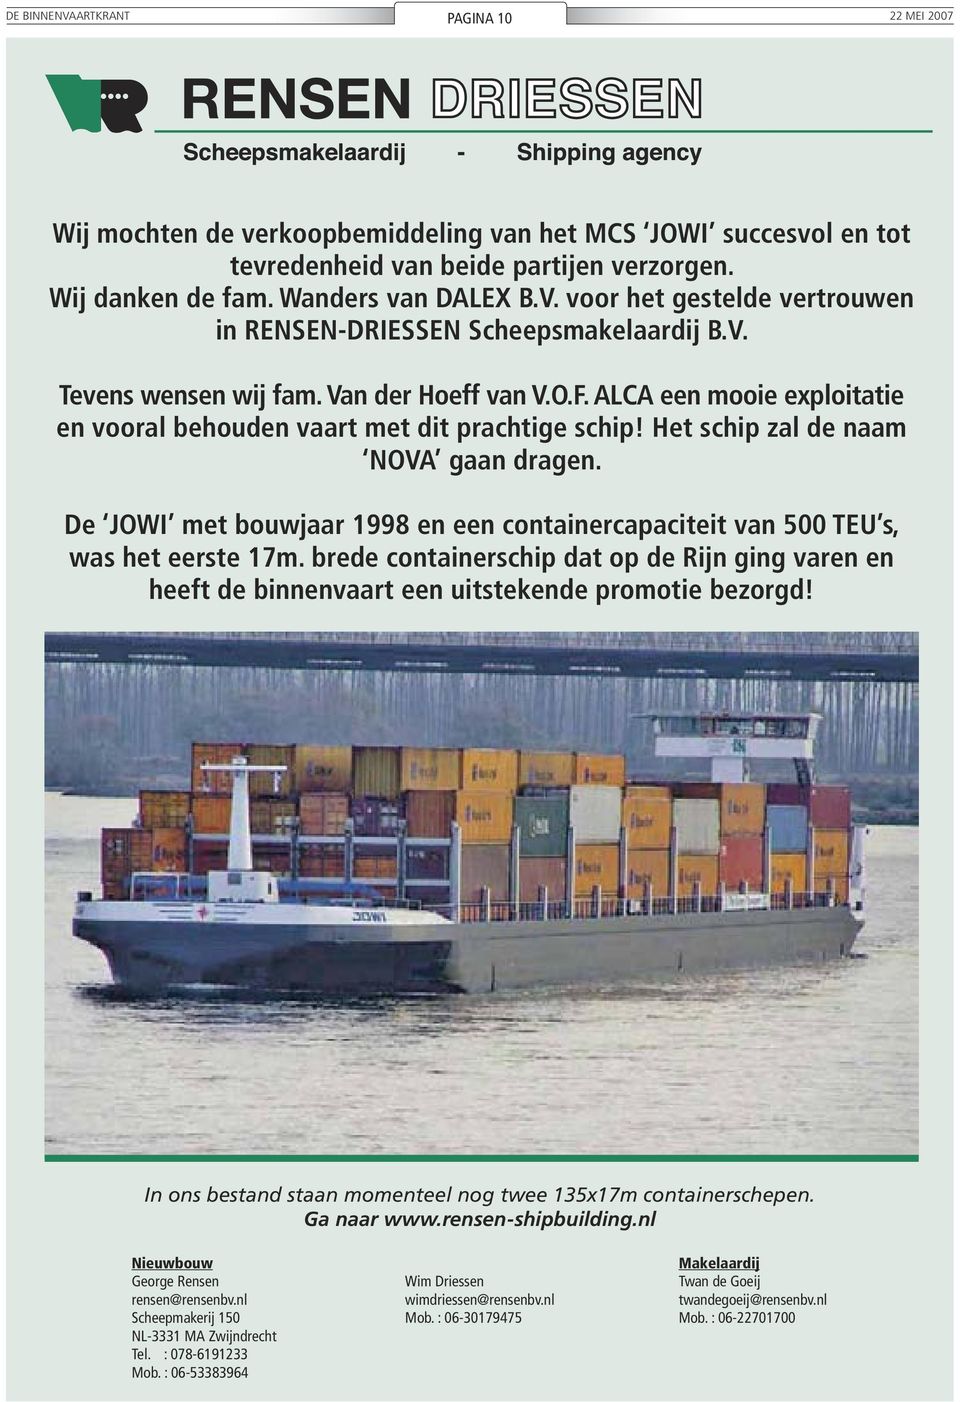 De JOWI met bouwjaar 1998 en een containercapaciteit van 500 TEU s, was het eerste 17m. brede containerschip dat op de Rijn ging varen en heeft de binnenvaart een uitstekende promotie bezorgd!